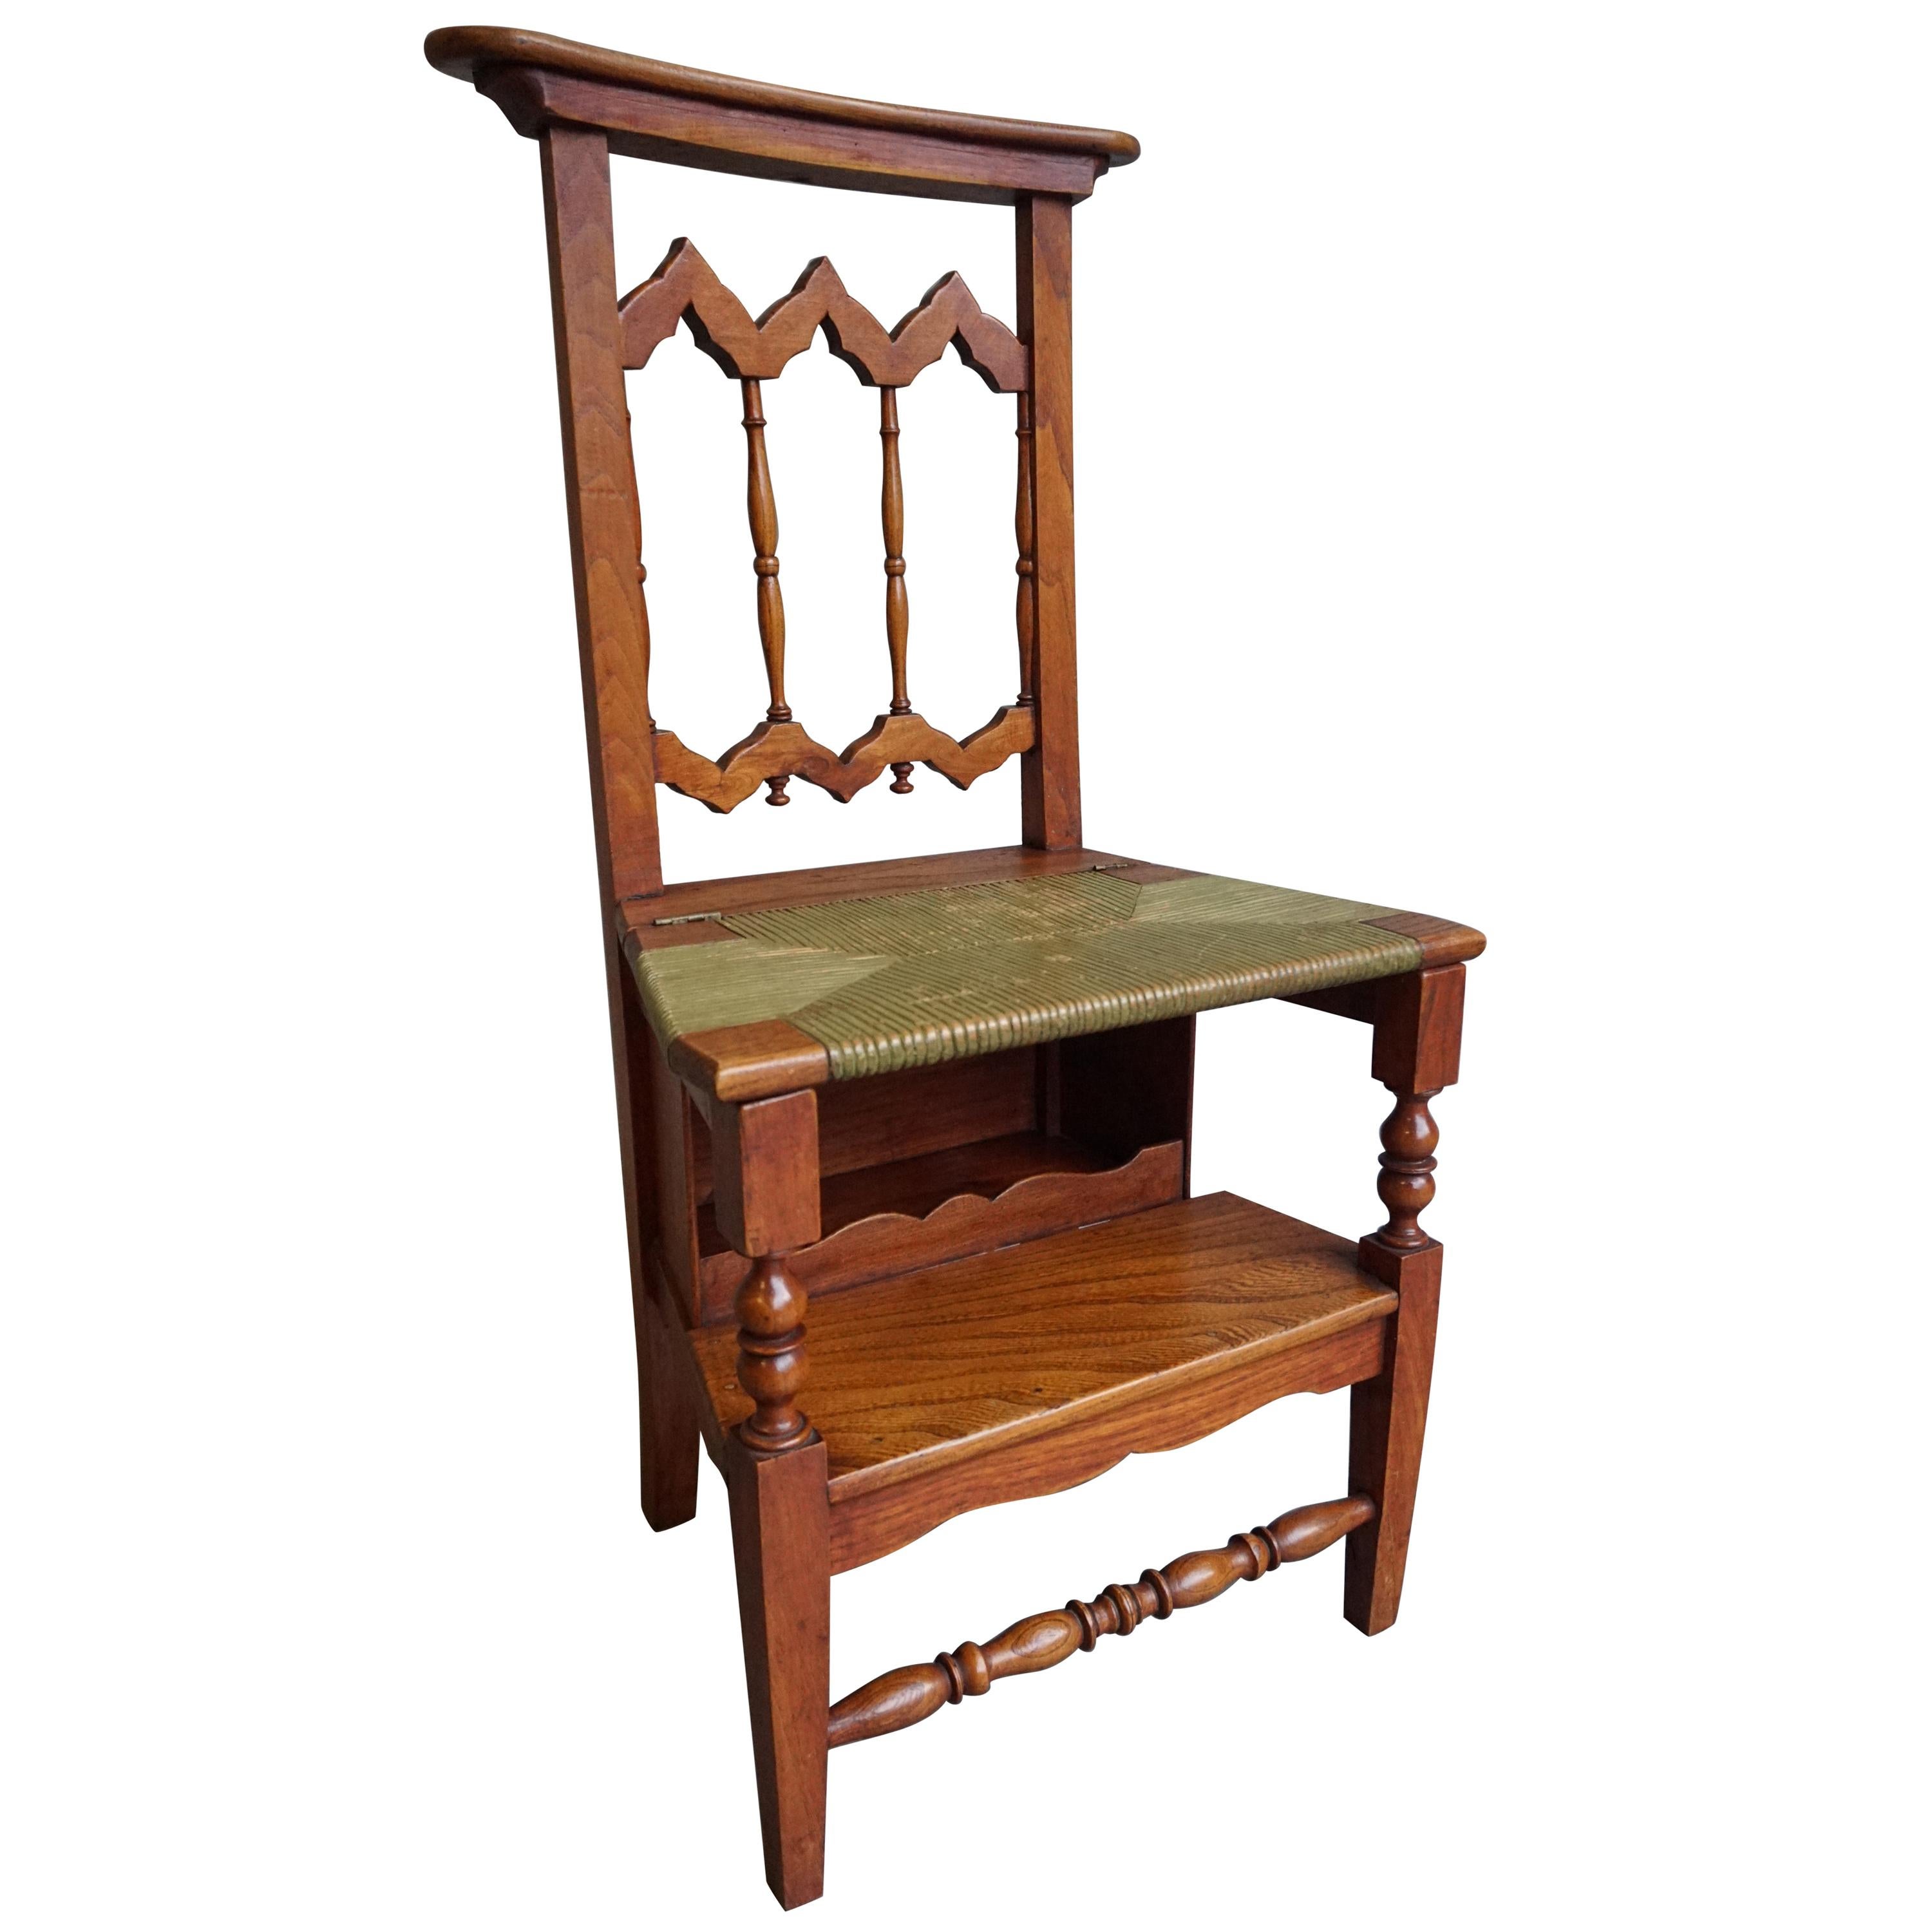 Chaise de lecture unique en bois d'orme de style néo-gothique, fabriquée à la main, digne d'une bibliothèque de monastère